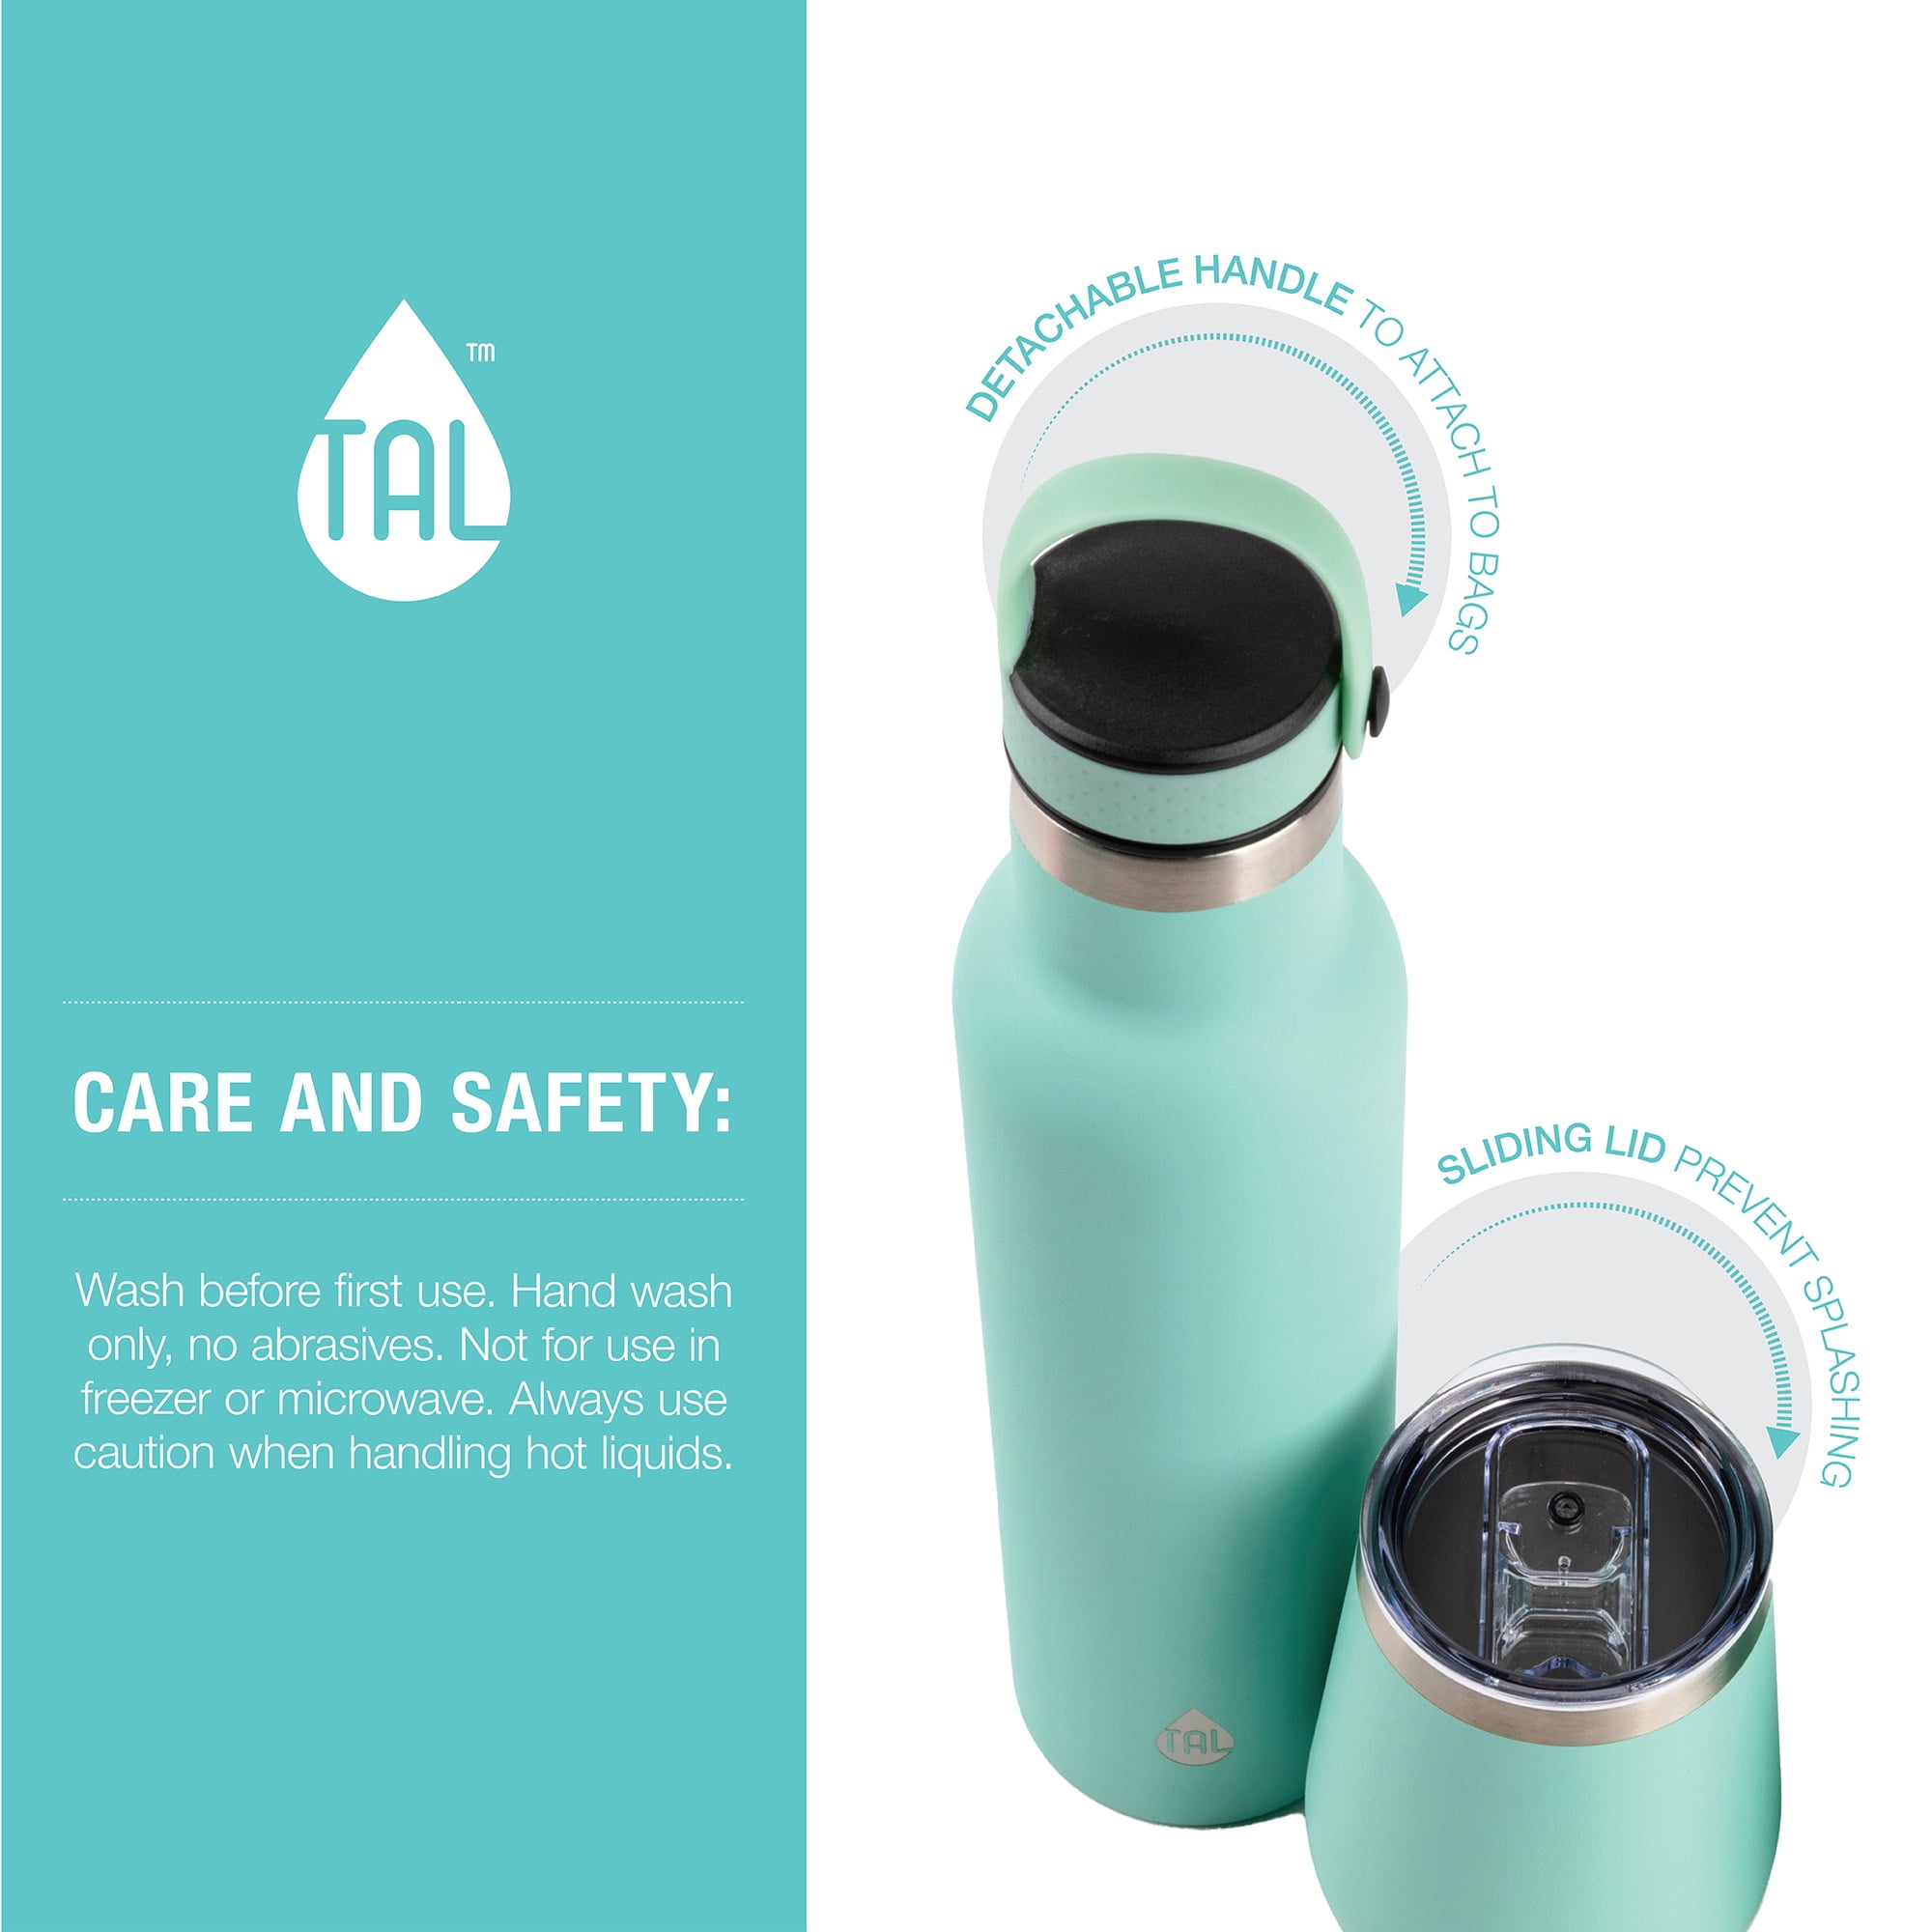 TAL Stainless Steel Ranger Water Bottle 26 fl oz, Slate - Yahoo Shopping